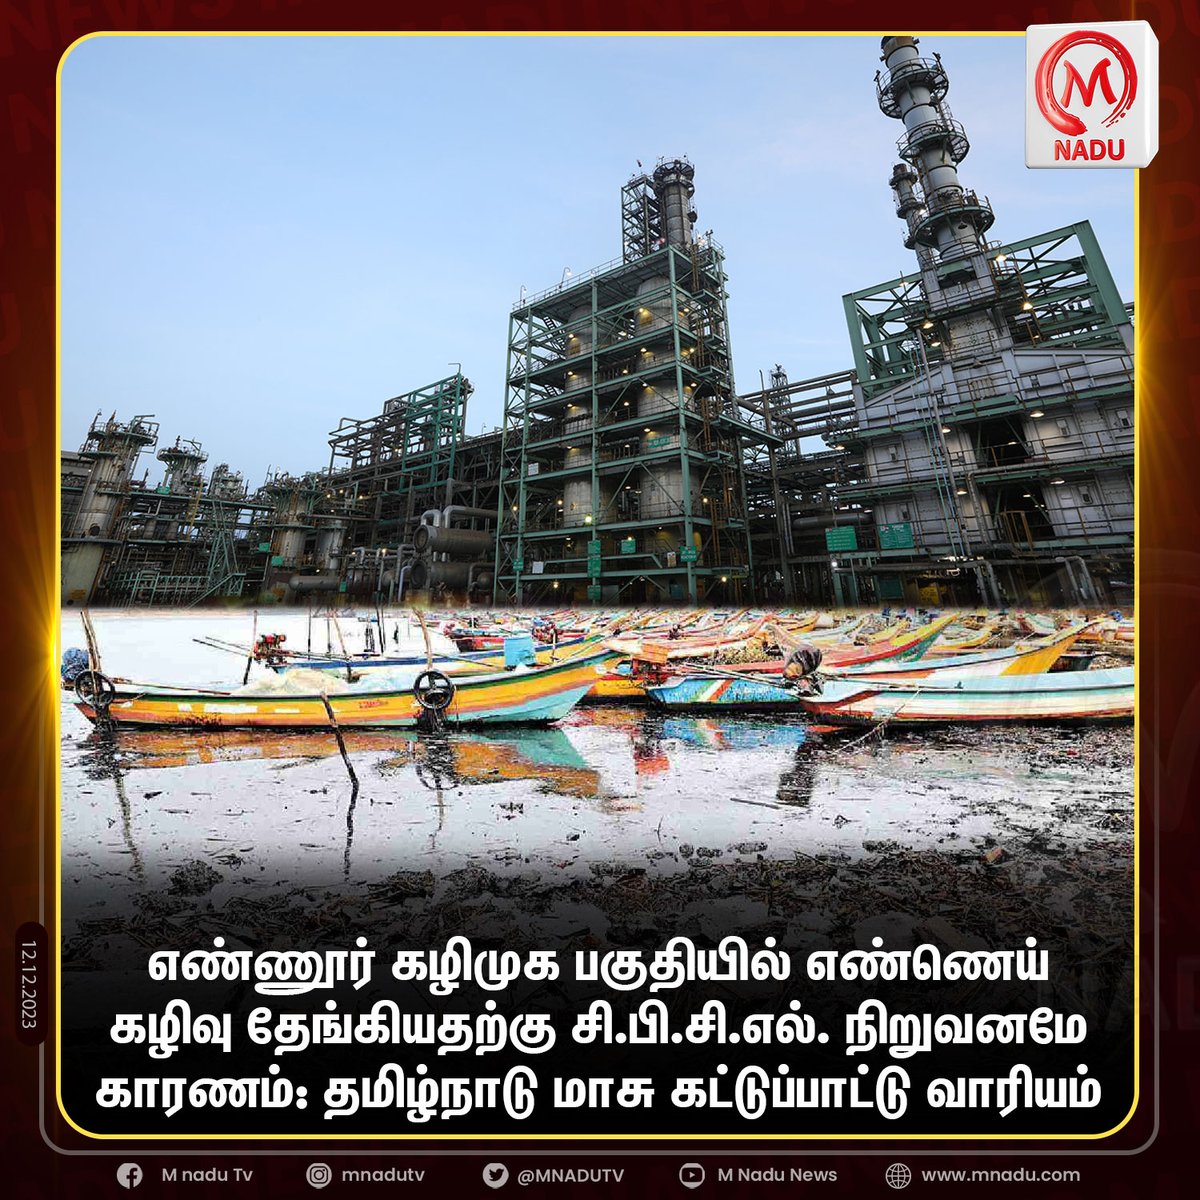 எண்ணூர் கழிமுக பகுதியில்
எண்ணெய் கழிவு தேங்கியதற்கு சி.பி.சி.எல். நிறுவனமே காரணம்: தமிழ்நாடு மாசு கட்டுப்பாட்டு வாரியம்.

#chennai #ennore #cpcl #environment #oil #ennoreoilspill #TamilNaduPollutionControlBoard #tnpcb #mnadunews #mnadu #mnadutv